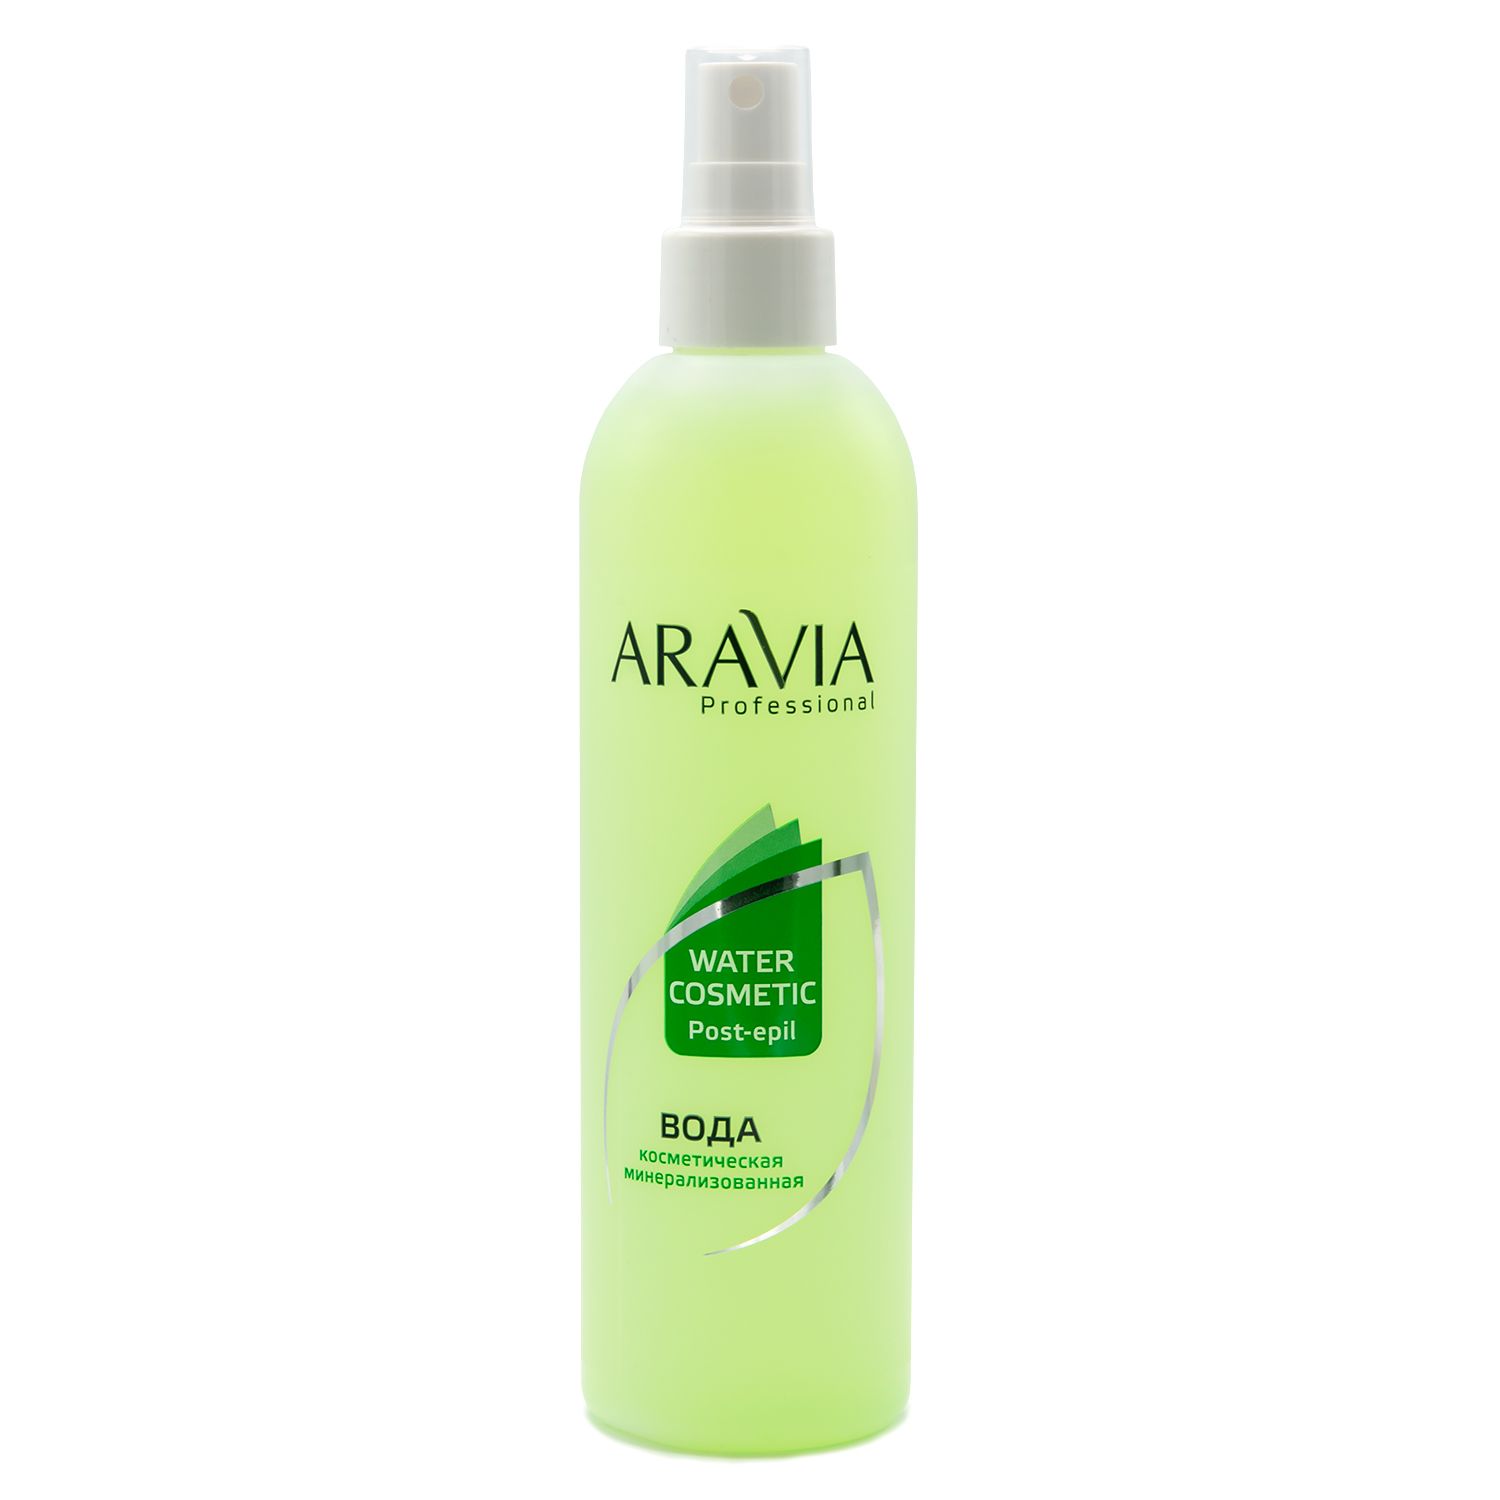 Aravia Professional Вода косметическая минерализованная с мятой и витаминами, 300мл